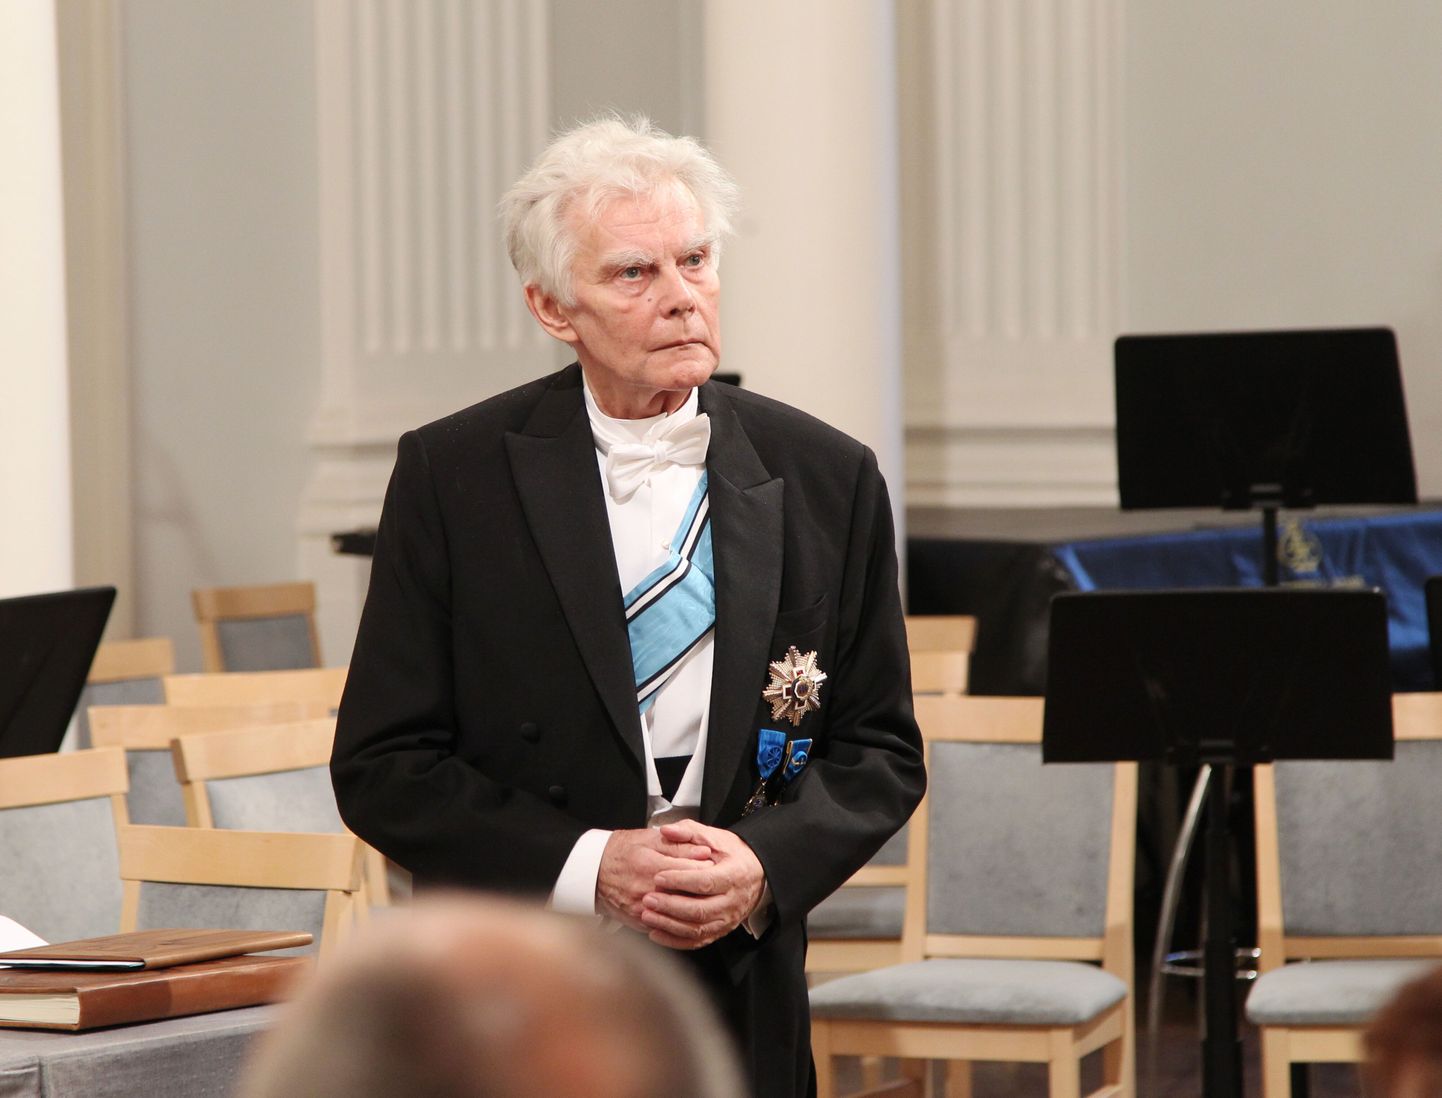 Täna, rahvusülikooli 95. aastapäeva aktusel kuulutati välja Tartu ülikooli Rahvusmõtte auhinna laureaat, kelleks sai vaimulik, tõlkija, literaat ja ühiskondliku elu tegelane Toomas Paul (pildil).